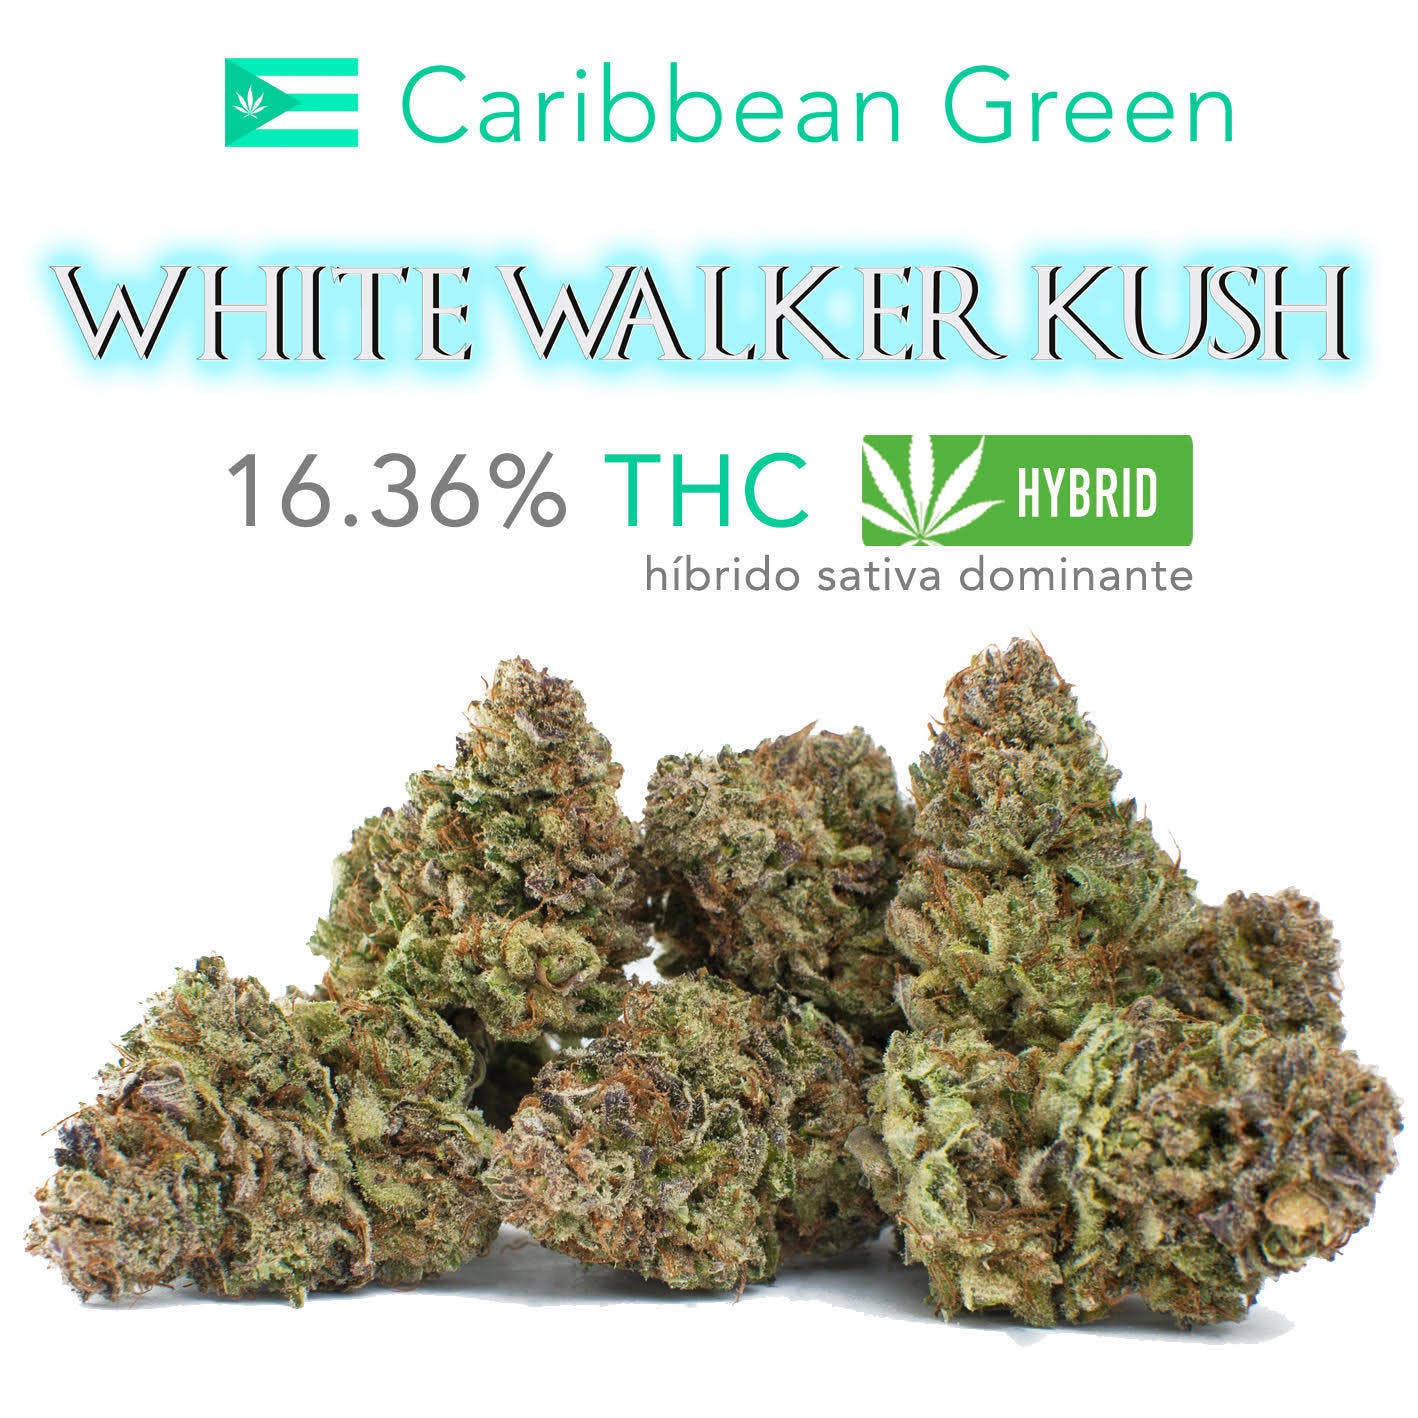 White Walker Kush - 16.36% THC CG PROMISE OF THE WEEK